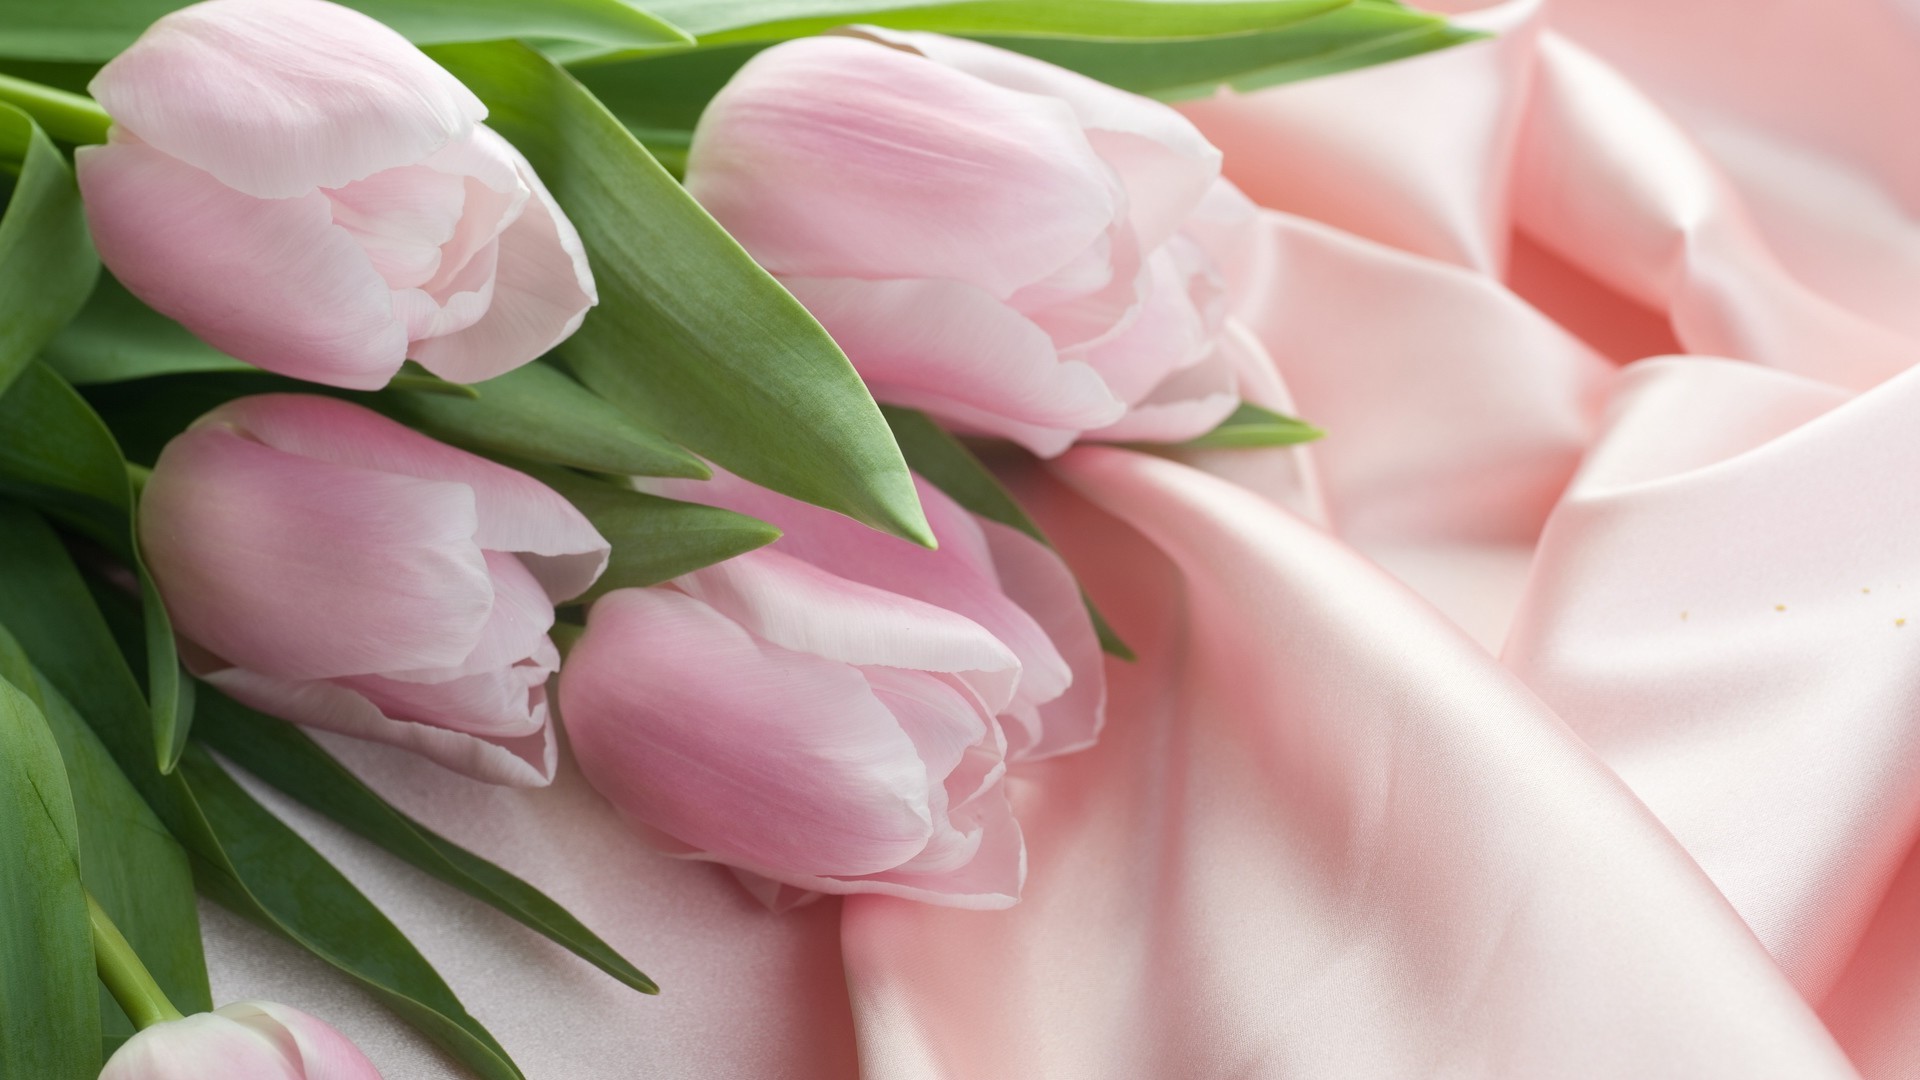 розы цветок природа любовь цветочные флора лист романтика букет подарок лепесток свадьба романтический красивые тюльпан блюминг пасха цвет юбилей